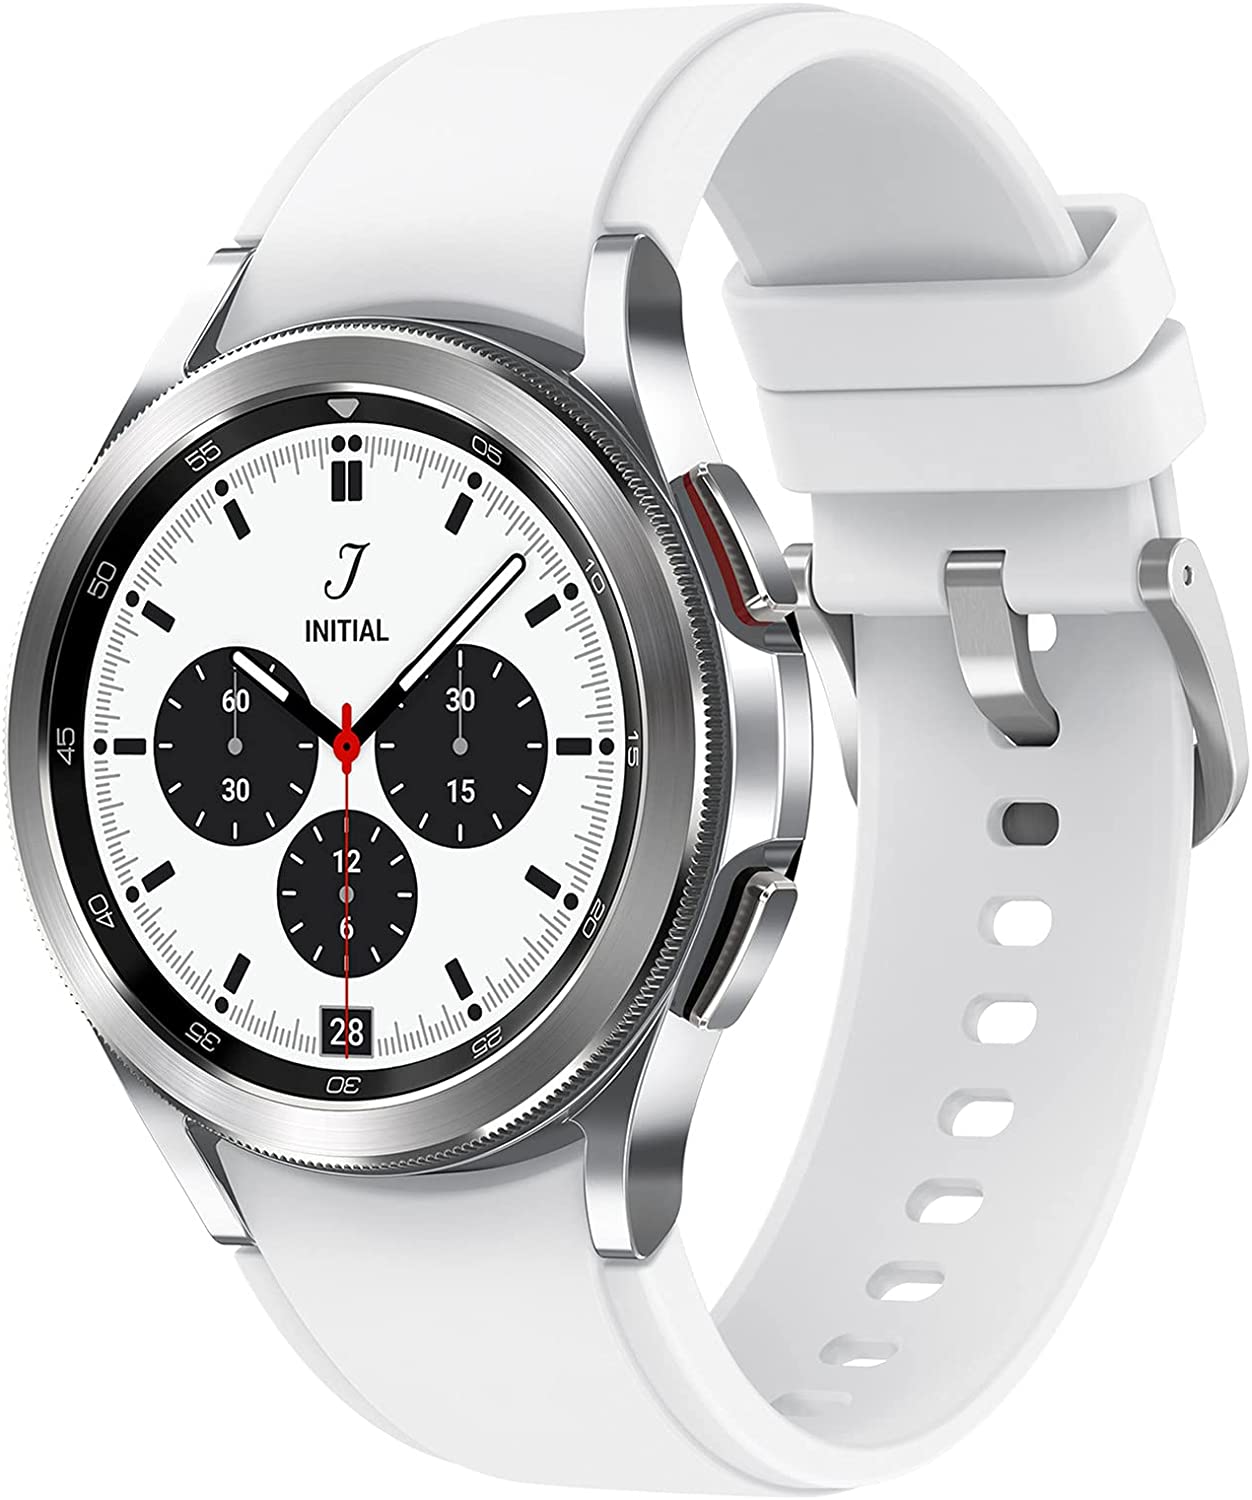 Samsung Galaxy Watch4 Classic - SmartWatch, Acciaio Inox, Ghiera Rotante, Monitoraggio Benessere, Fitness Tracker, 2021, Argento (Silver), 42mm [Versione Italiana] emporio mp3